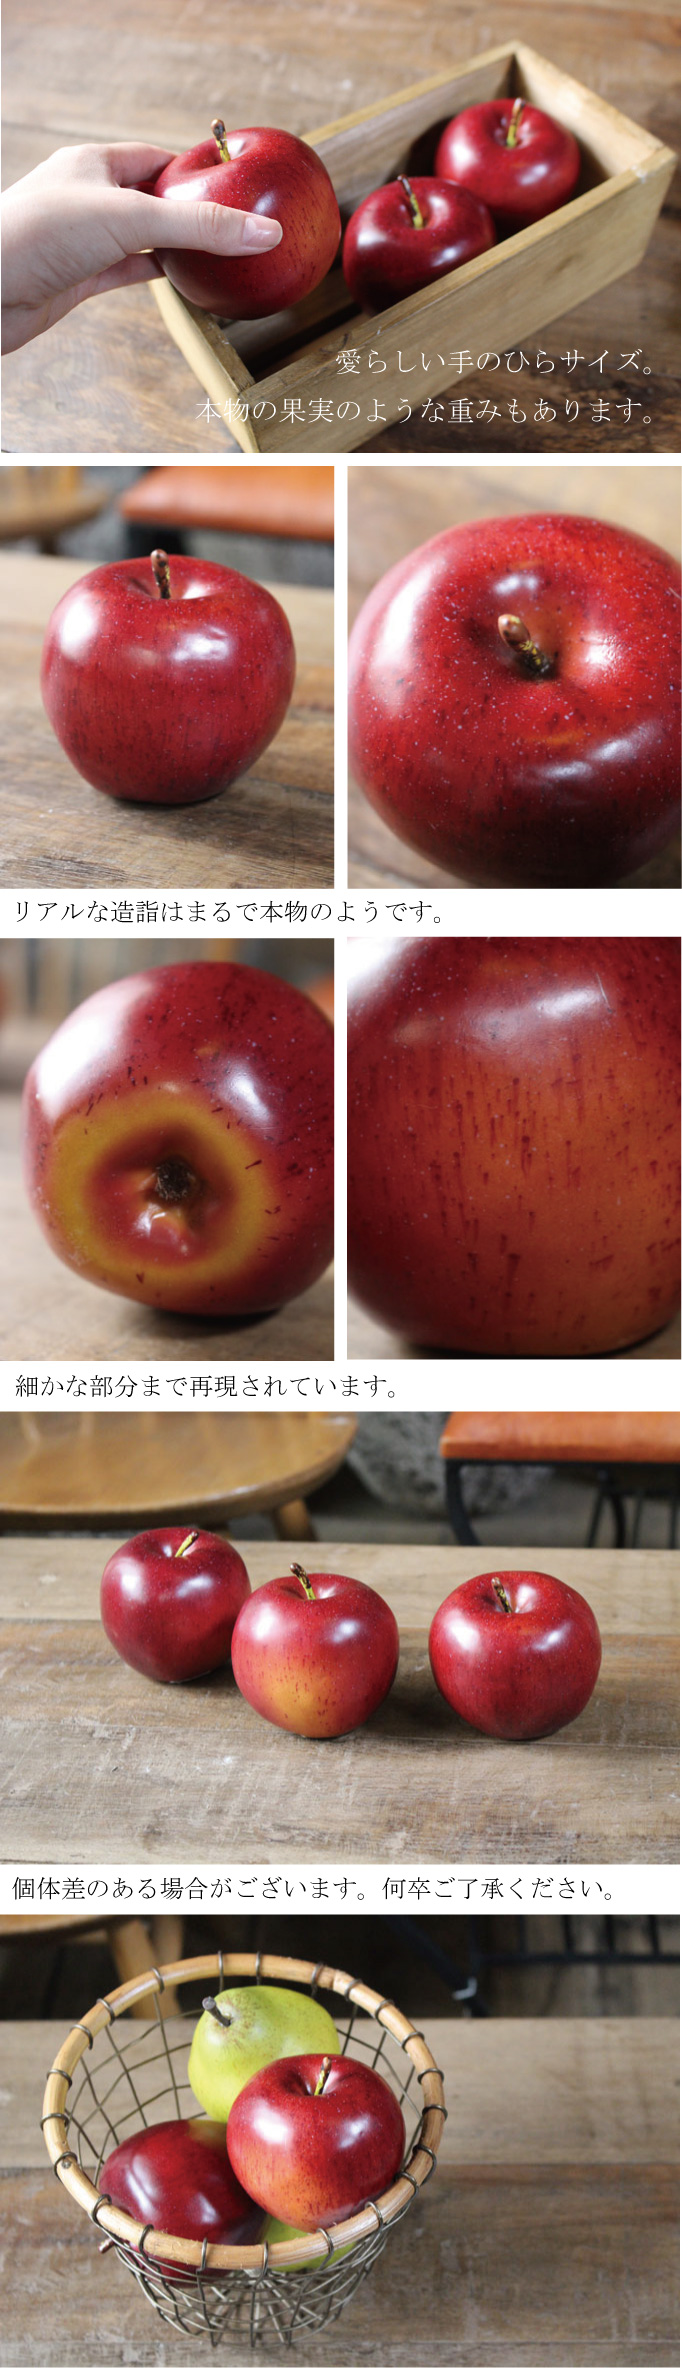 89円 有名な高級ブランド リンゴ アップル 造花 フェイクフルーツ フェイクフード H0462